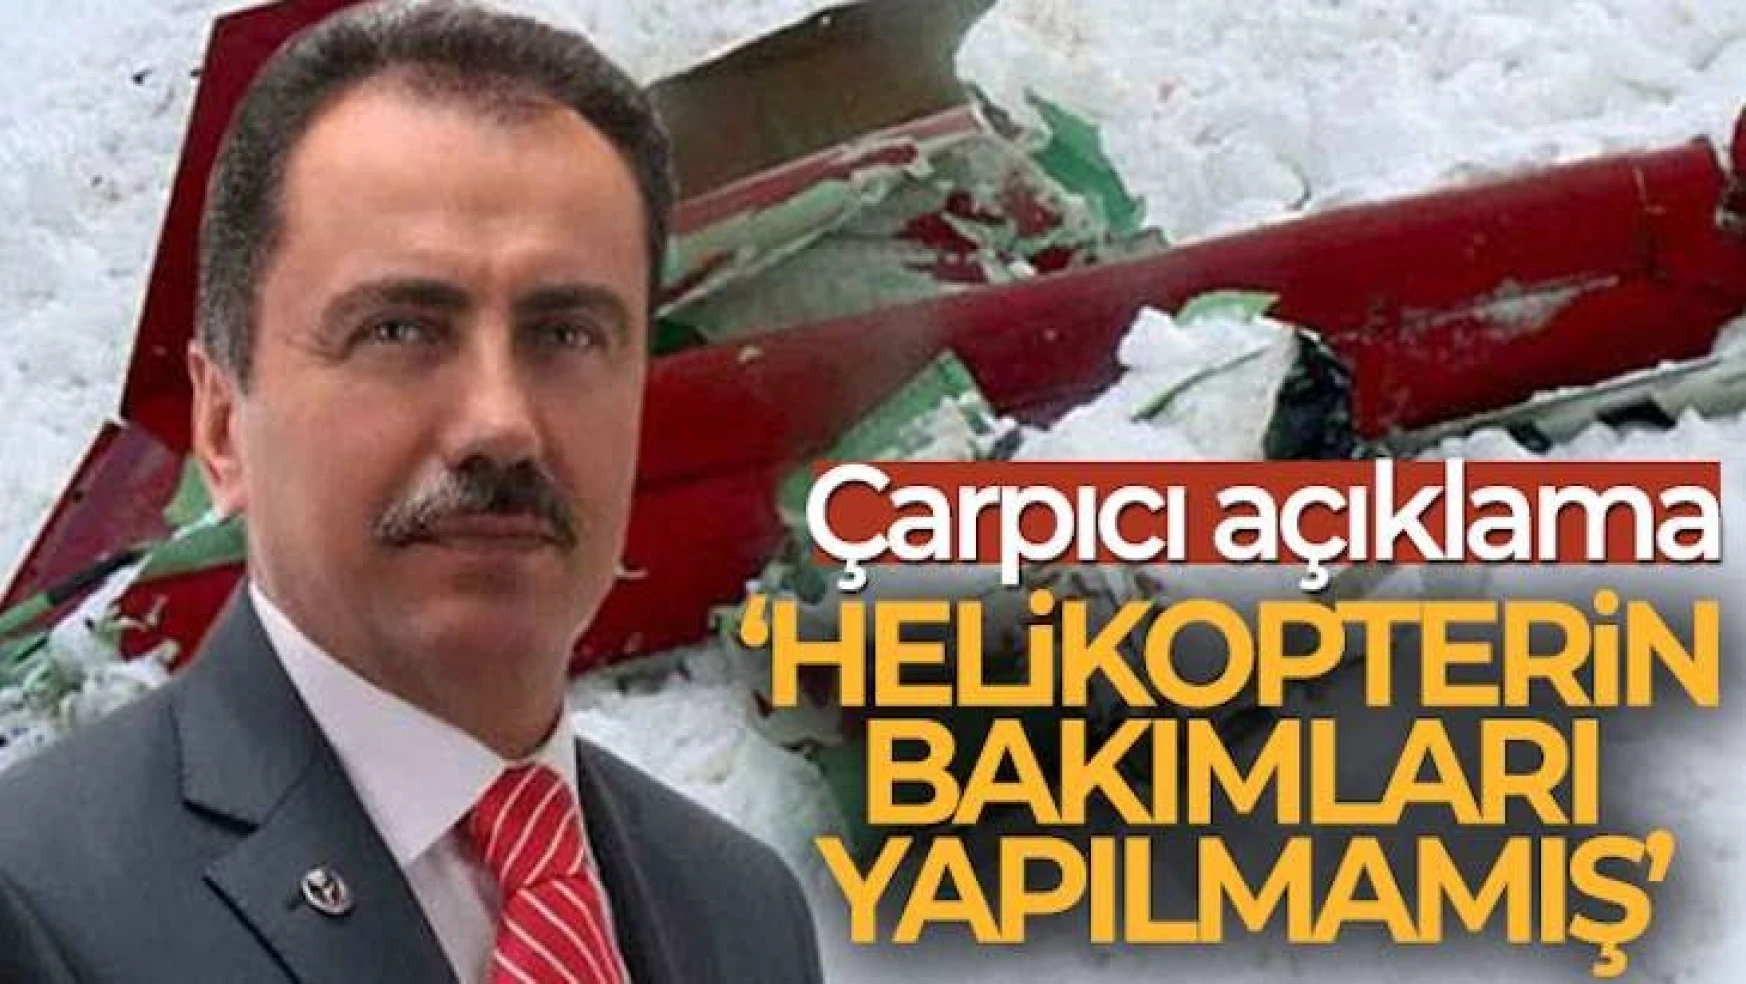 Yazıcıoğlu'nun helikopterinin bakımları yapılmamış